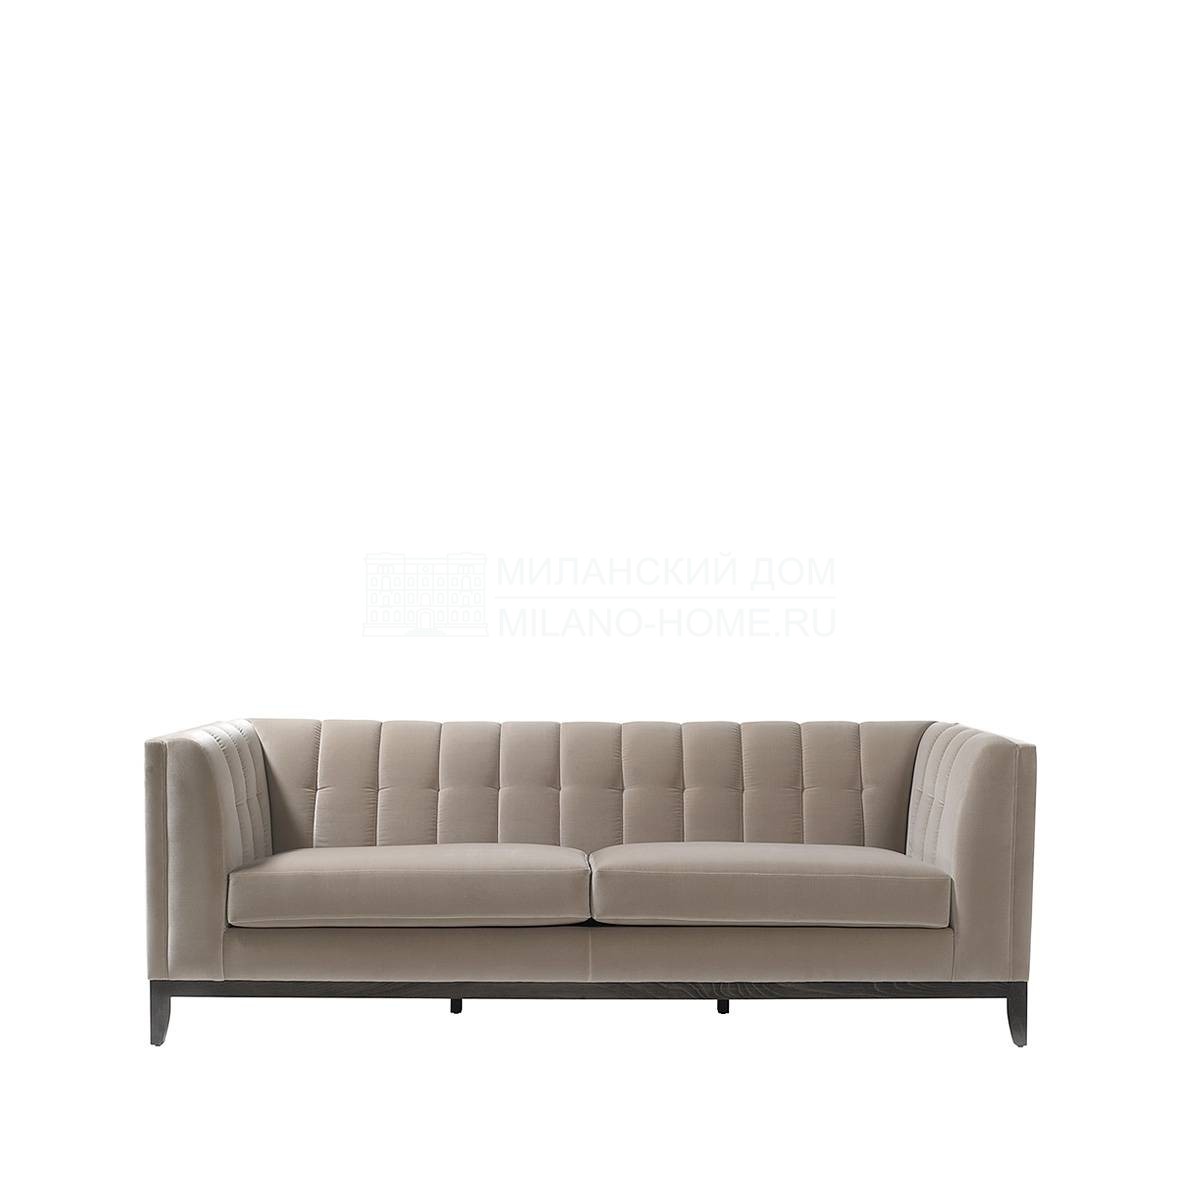 Прямой диван Poitiers sofa из Испании фабрики COLECCION ALEXANDRA